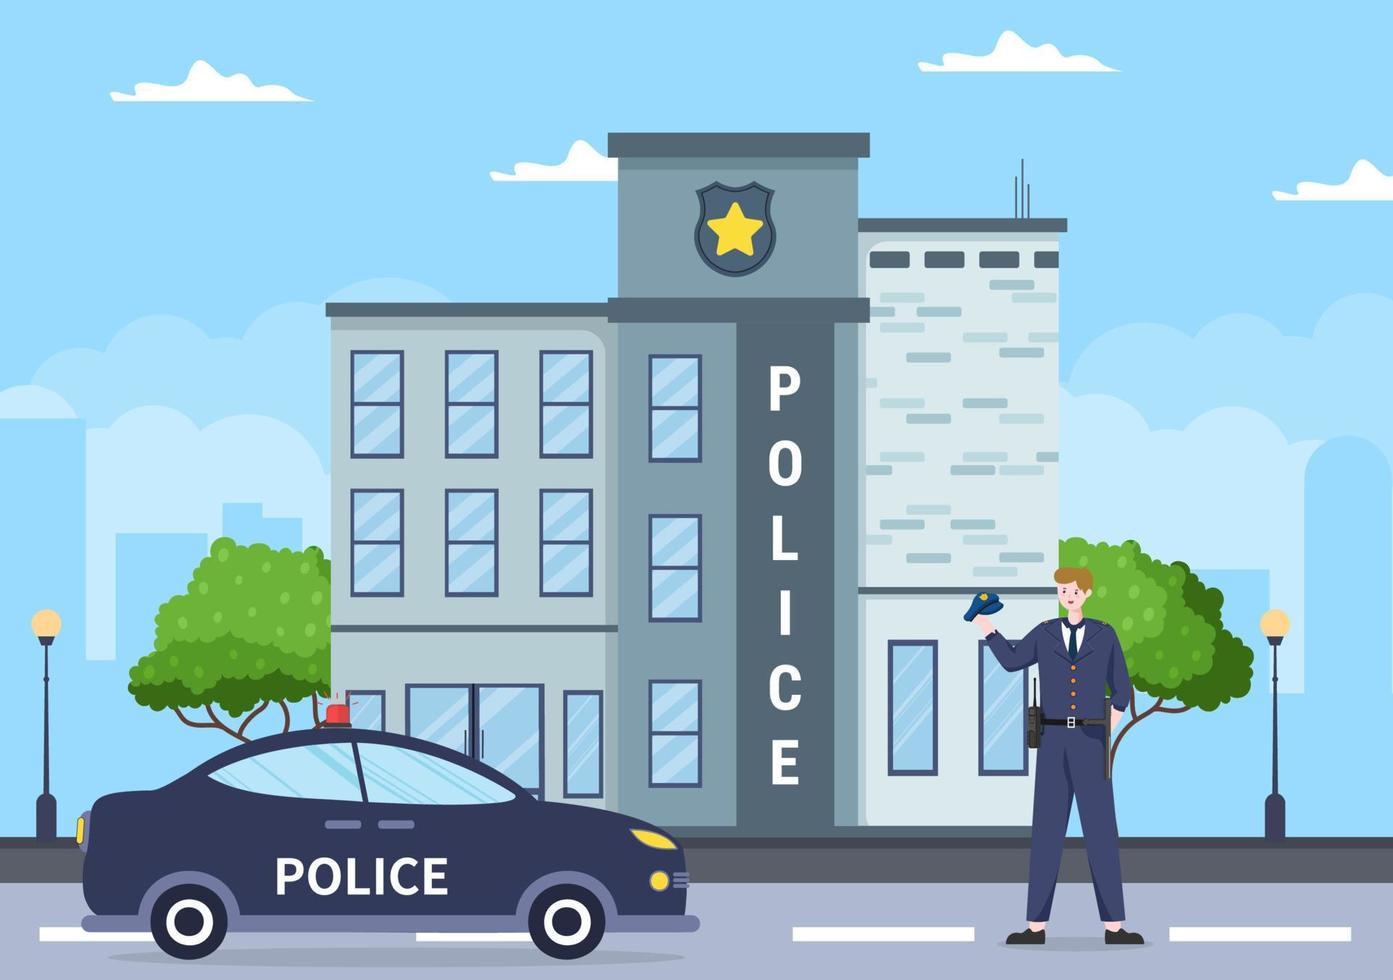 bâtiment du service de police avec policier et voiture de police dans une illustration de fond de style plat vecteur